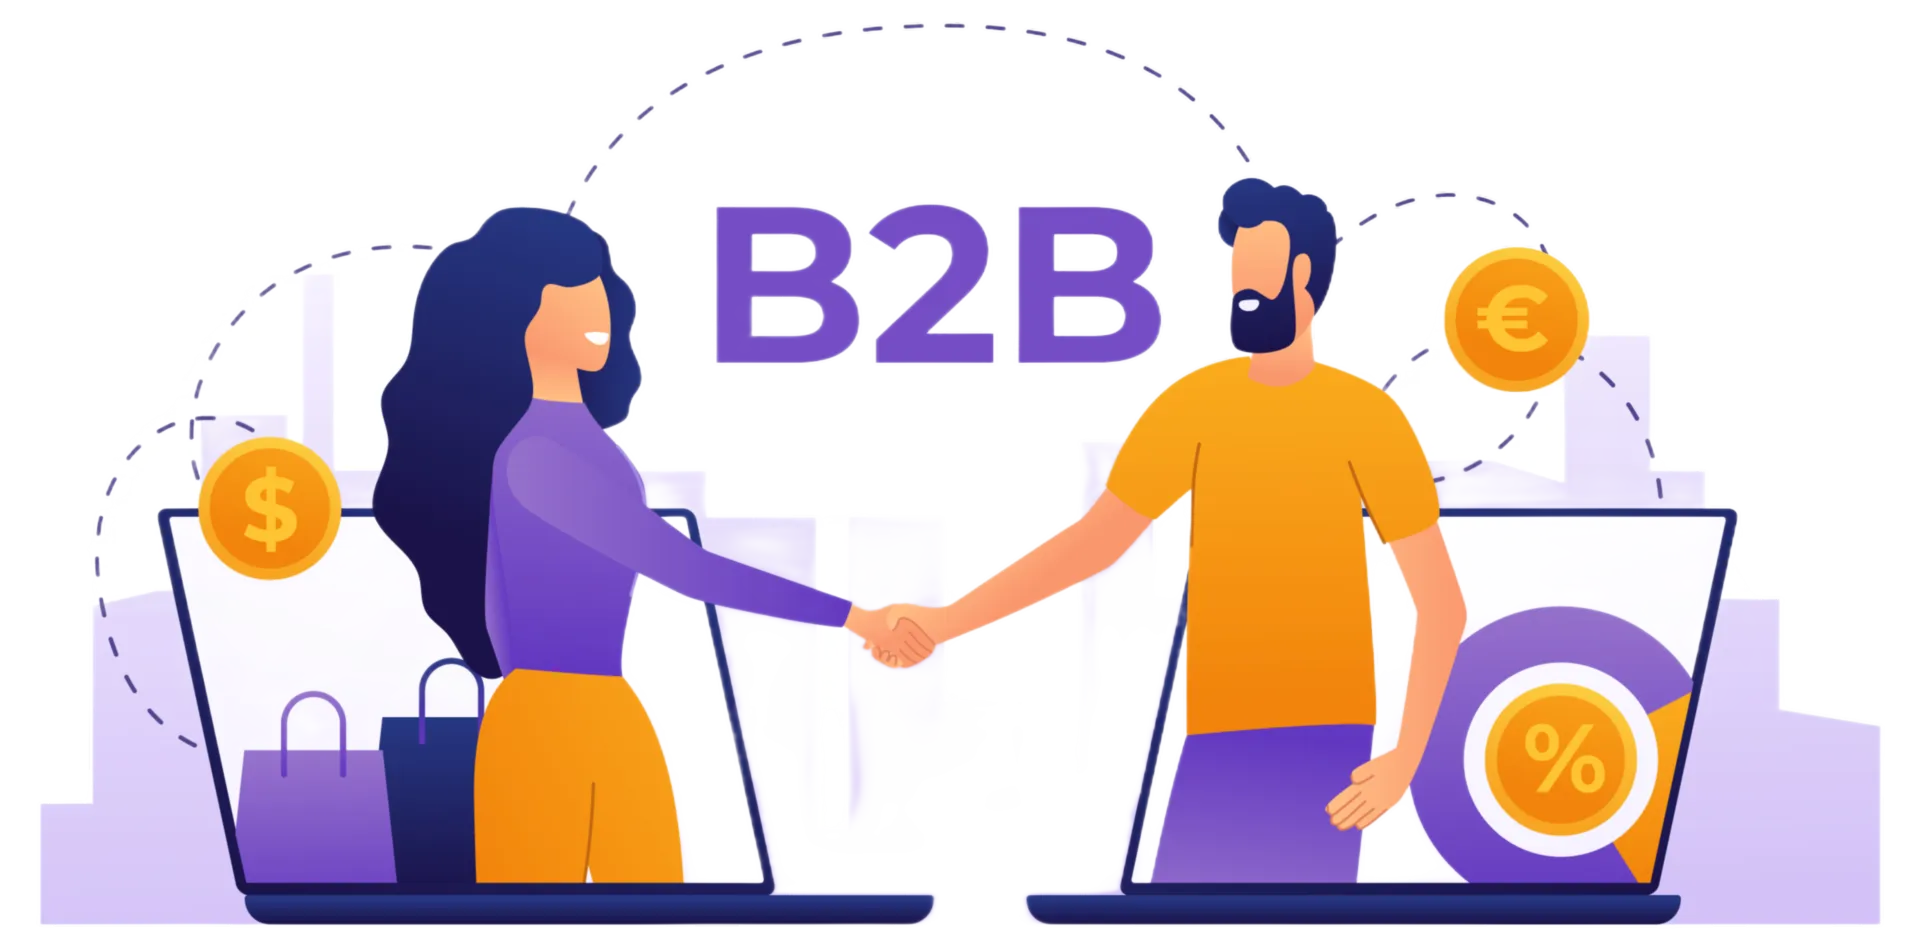 grafica vettoriale di 2 persone che si stringono la mano con la scritta b2b sullo sfondo.